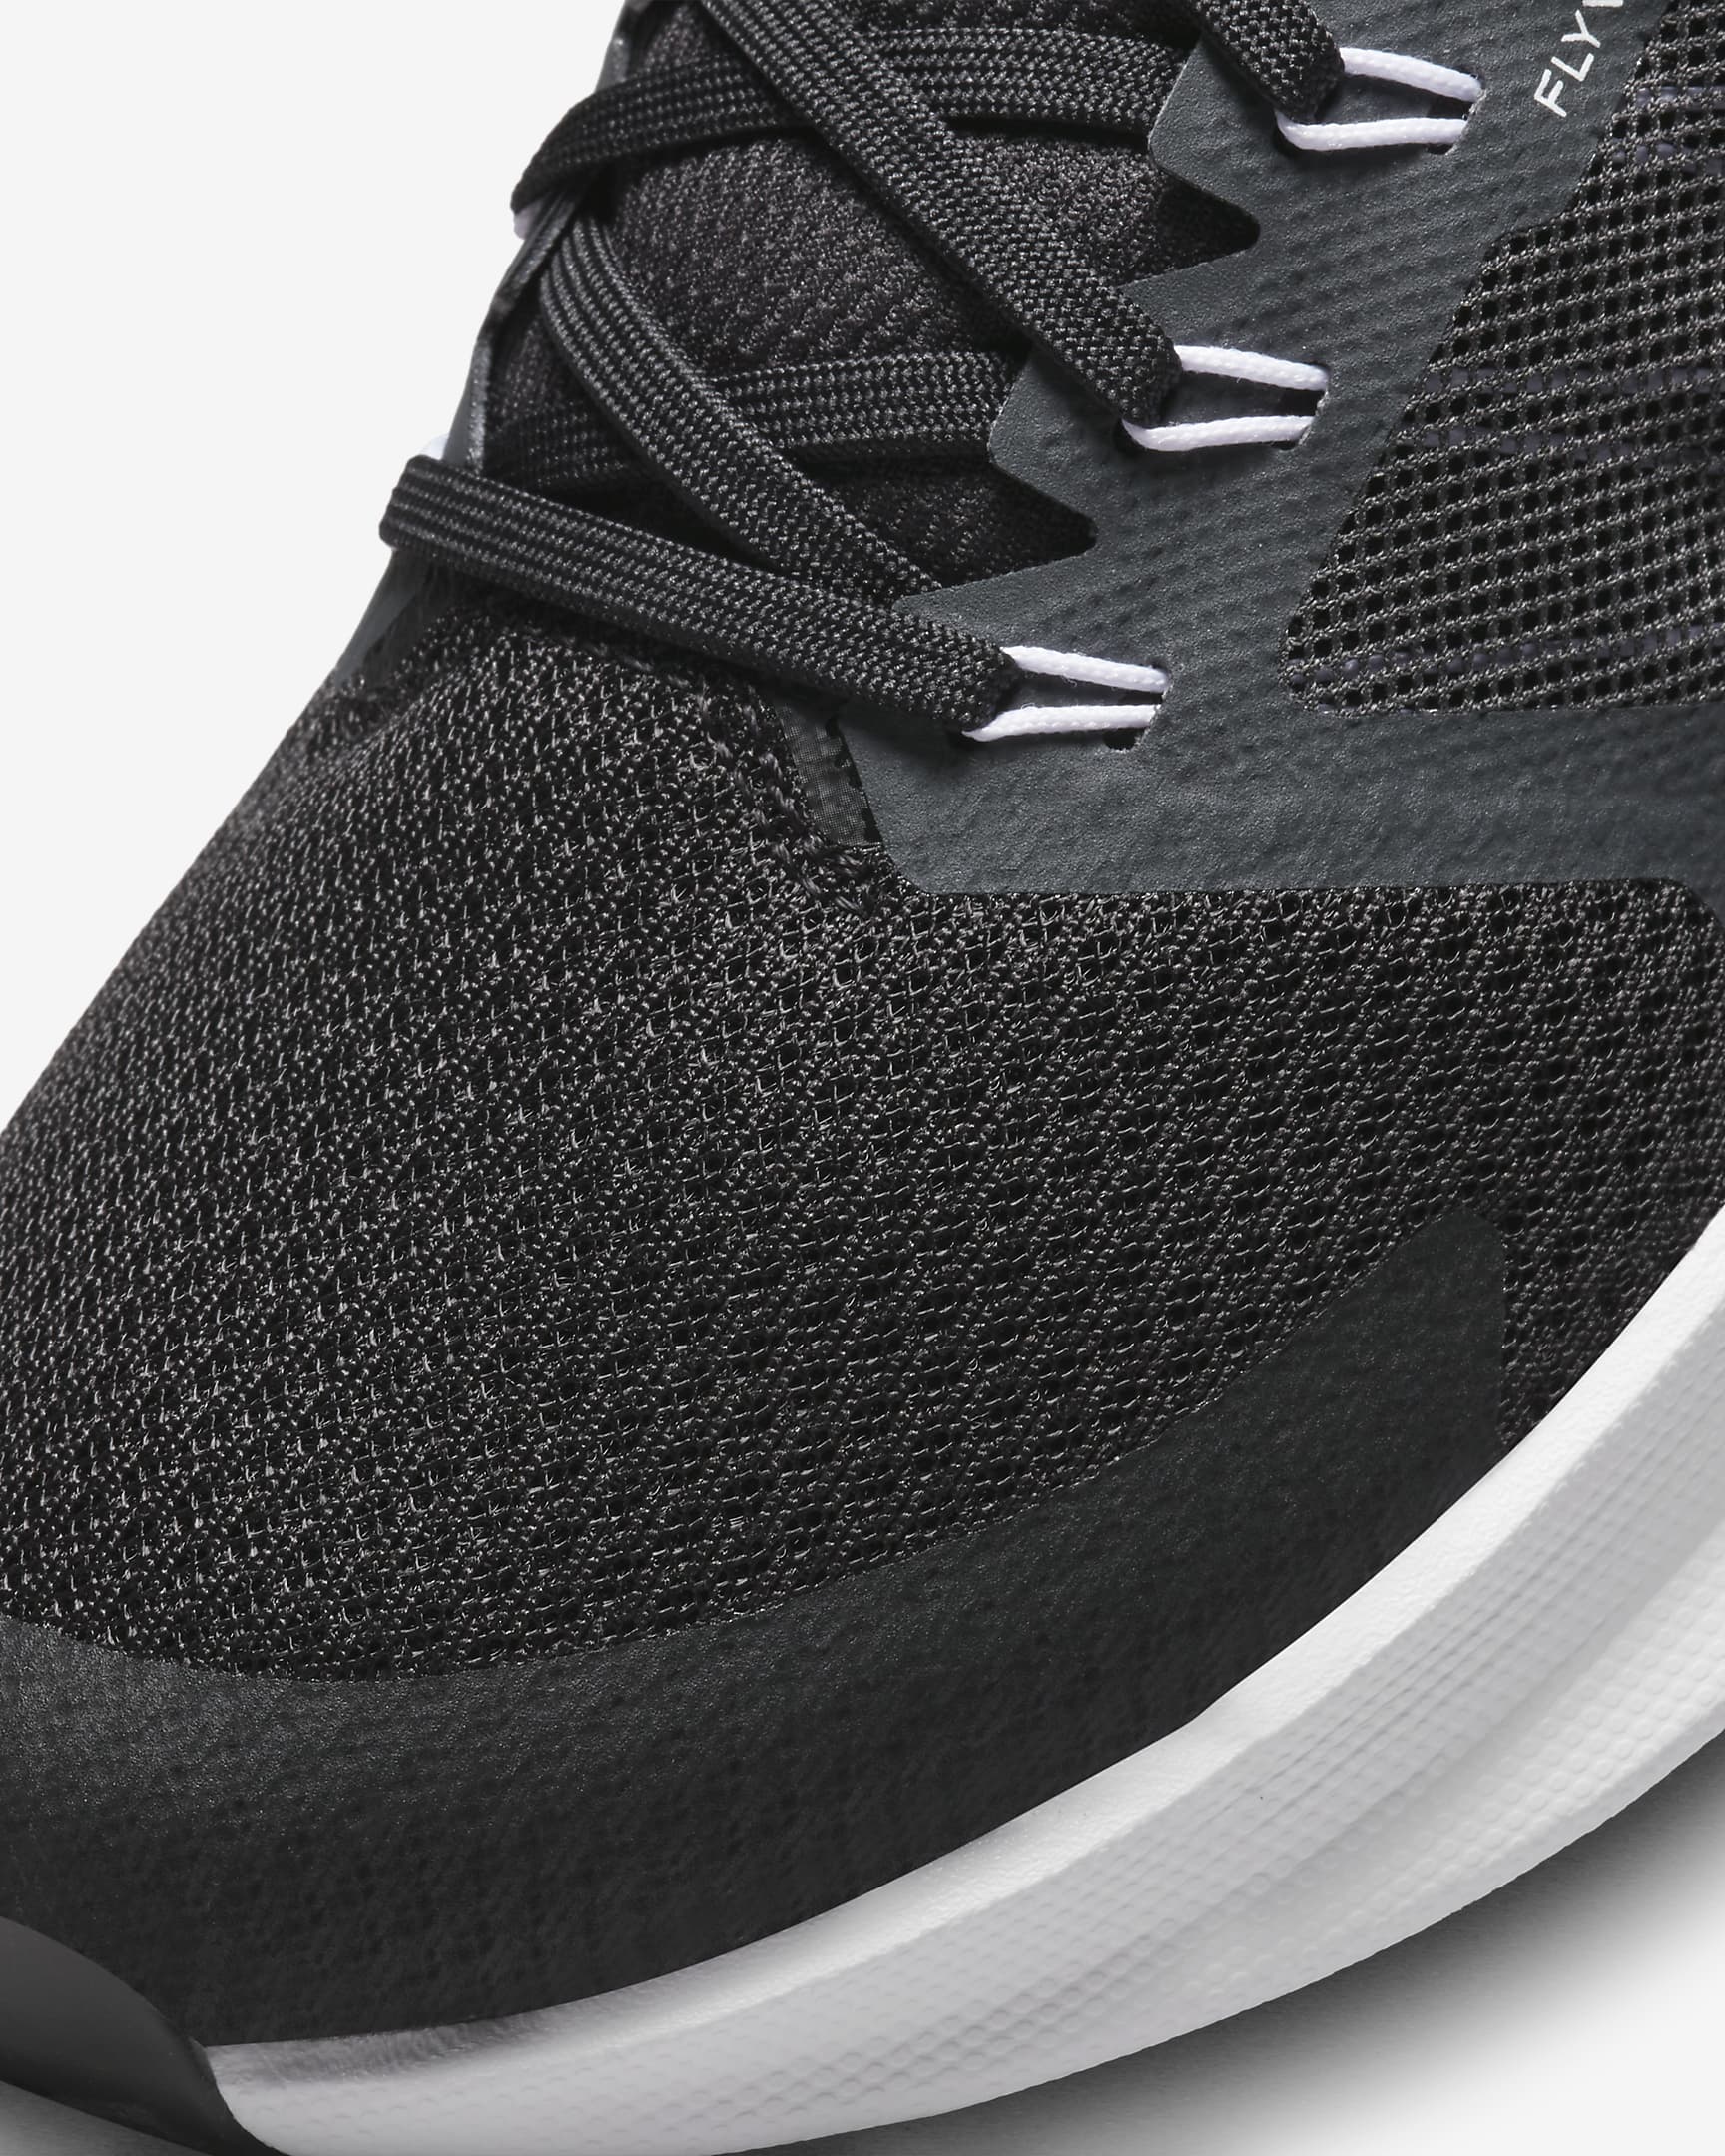 Nike Run Swift 3 Women's Road Running Shoes - Black/Dark Smoke Grey/White